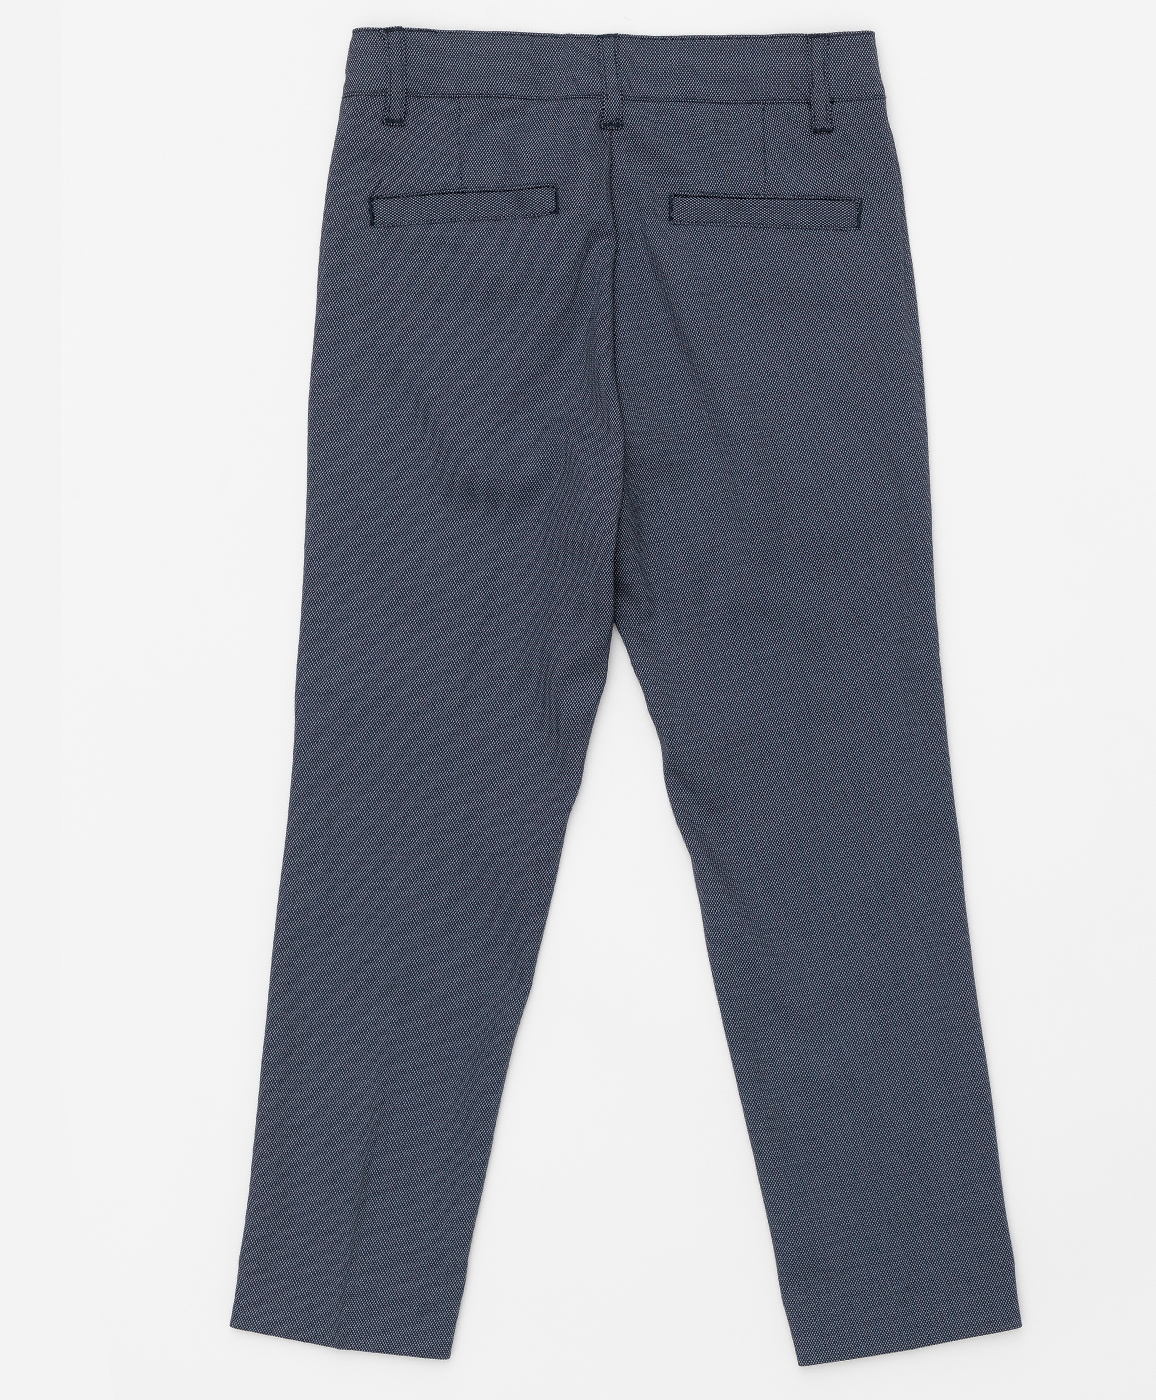 Серые брюки с узором "точка" Button Blue 220BBBMP63010800, размер 104, цвет серый regular fit / прямые - фото 2